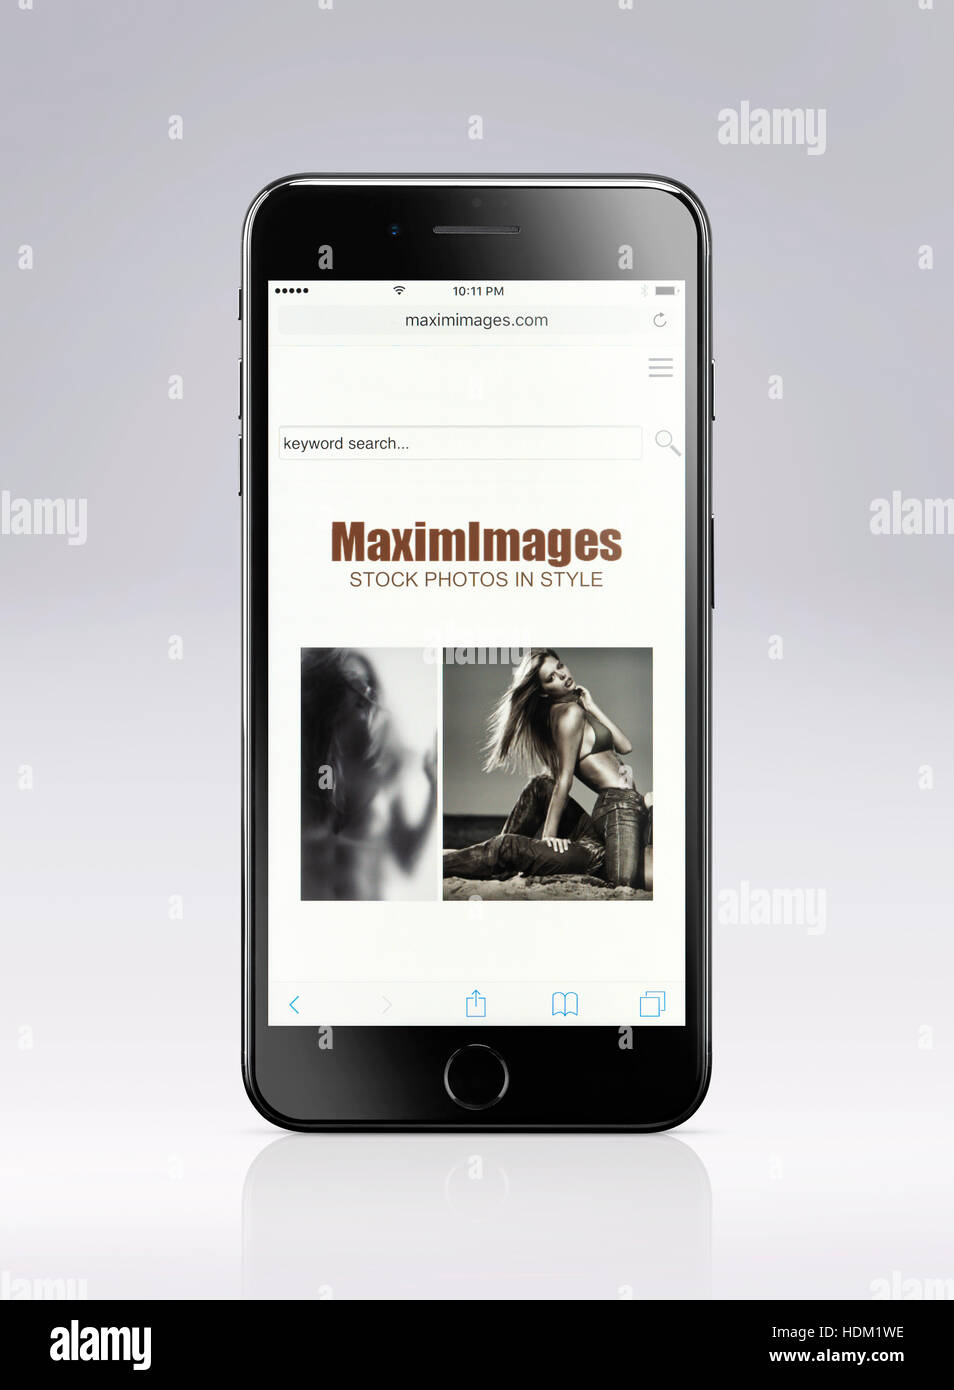 Apple iPhone 7 Plus MaximImages avec stock photography website ouvert sur son affichage isolé sur fond gris clair avec clipping path Banque D'Images